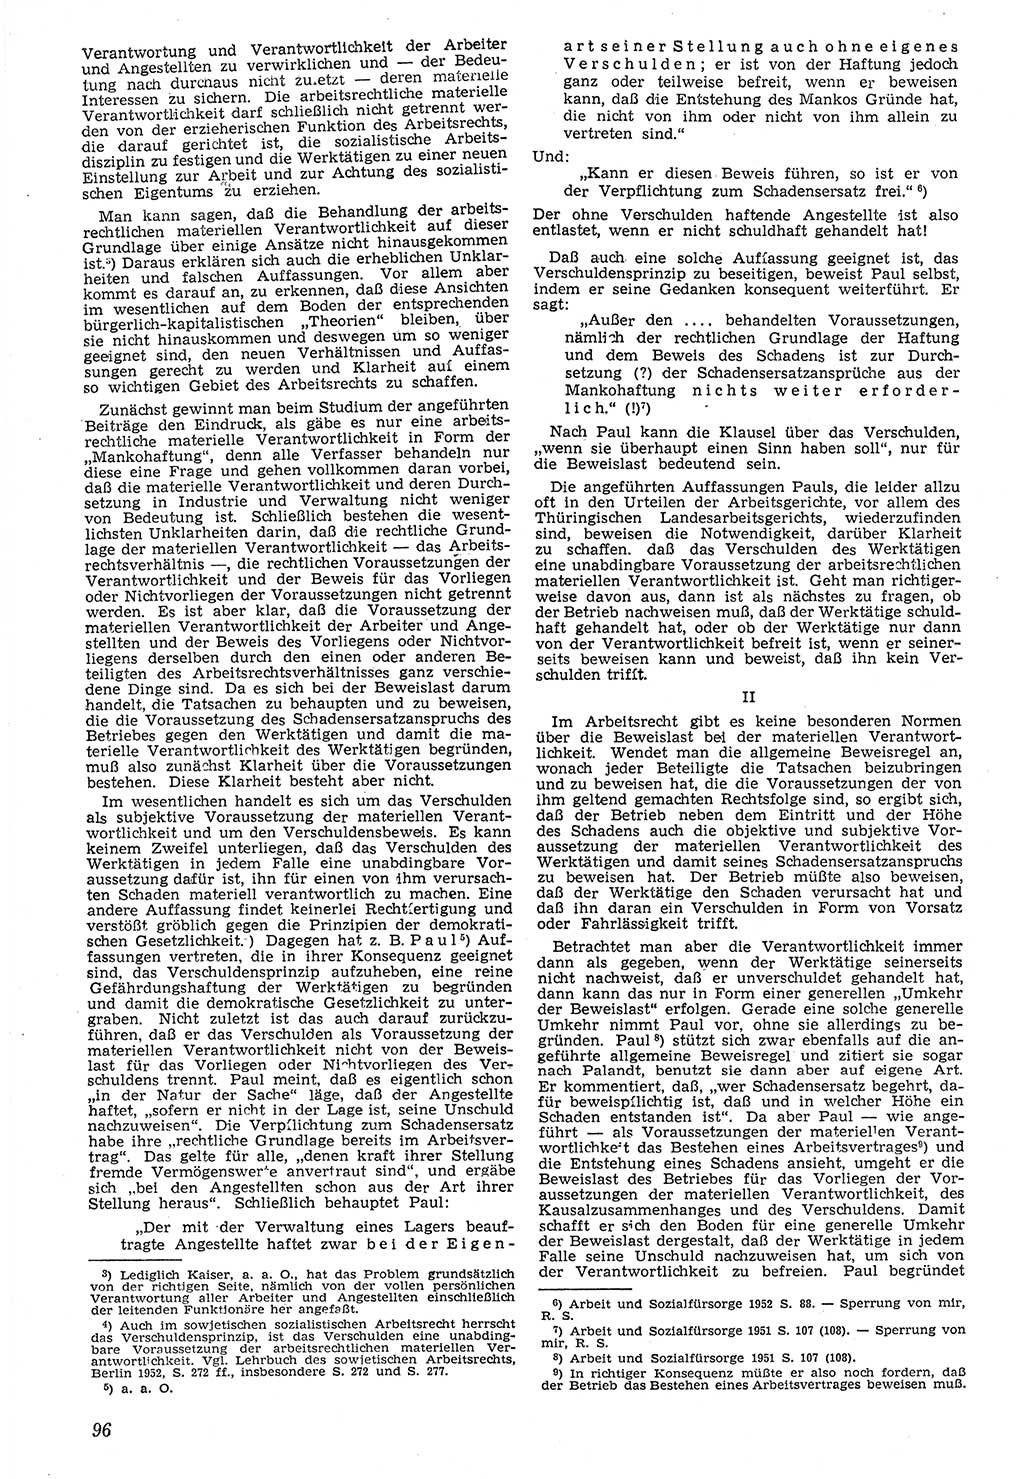 Neue Justiz (NJ), Zeitschrift für Recht und Rechtswissenschaft [Deutsche Demokratische Republik (DDR)], 7. Jahrgang 1953, Seite 96 (NJ DDR 1953, S. 96)